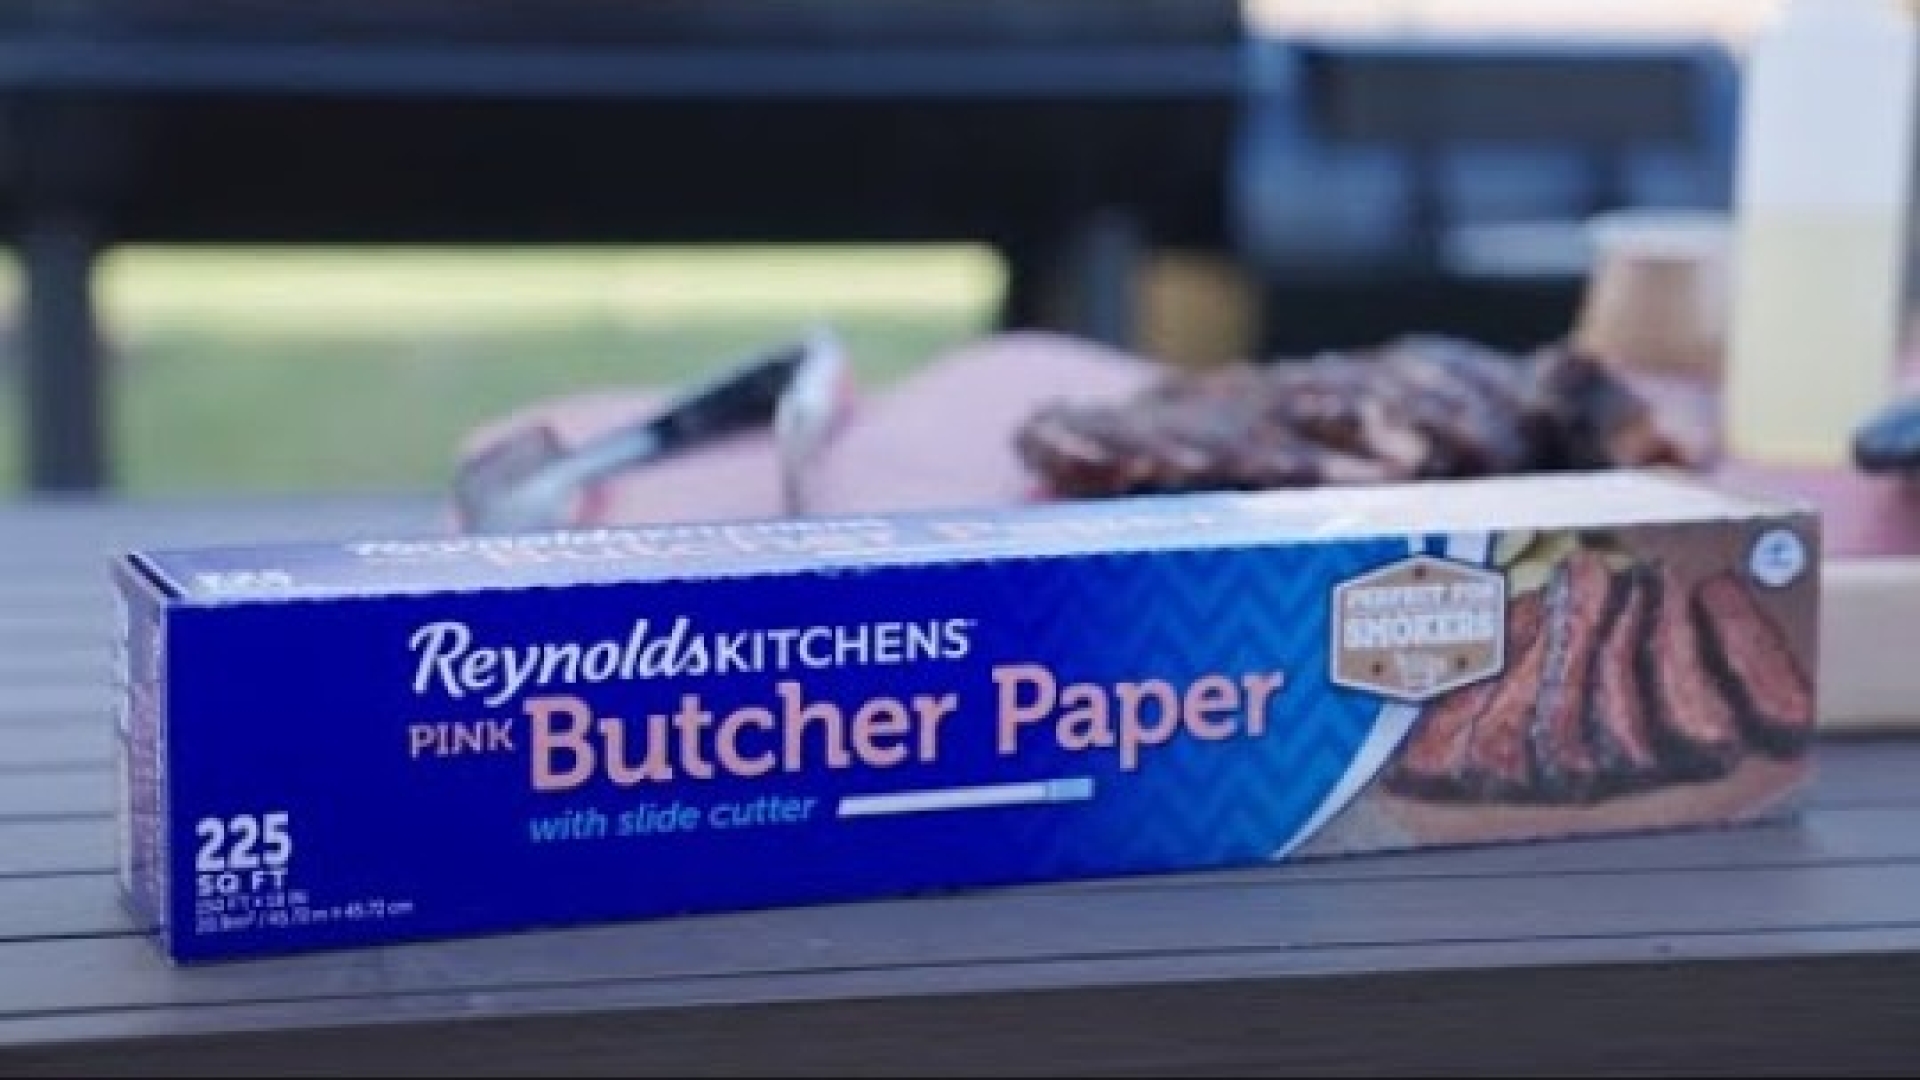 Reynolds Kitchens Butcher Paper, Pink